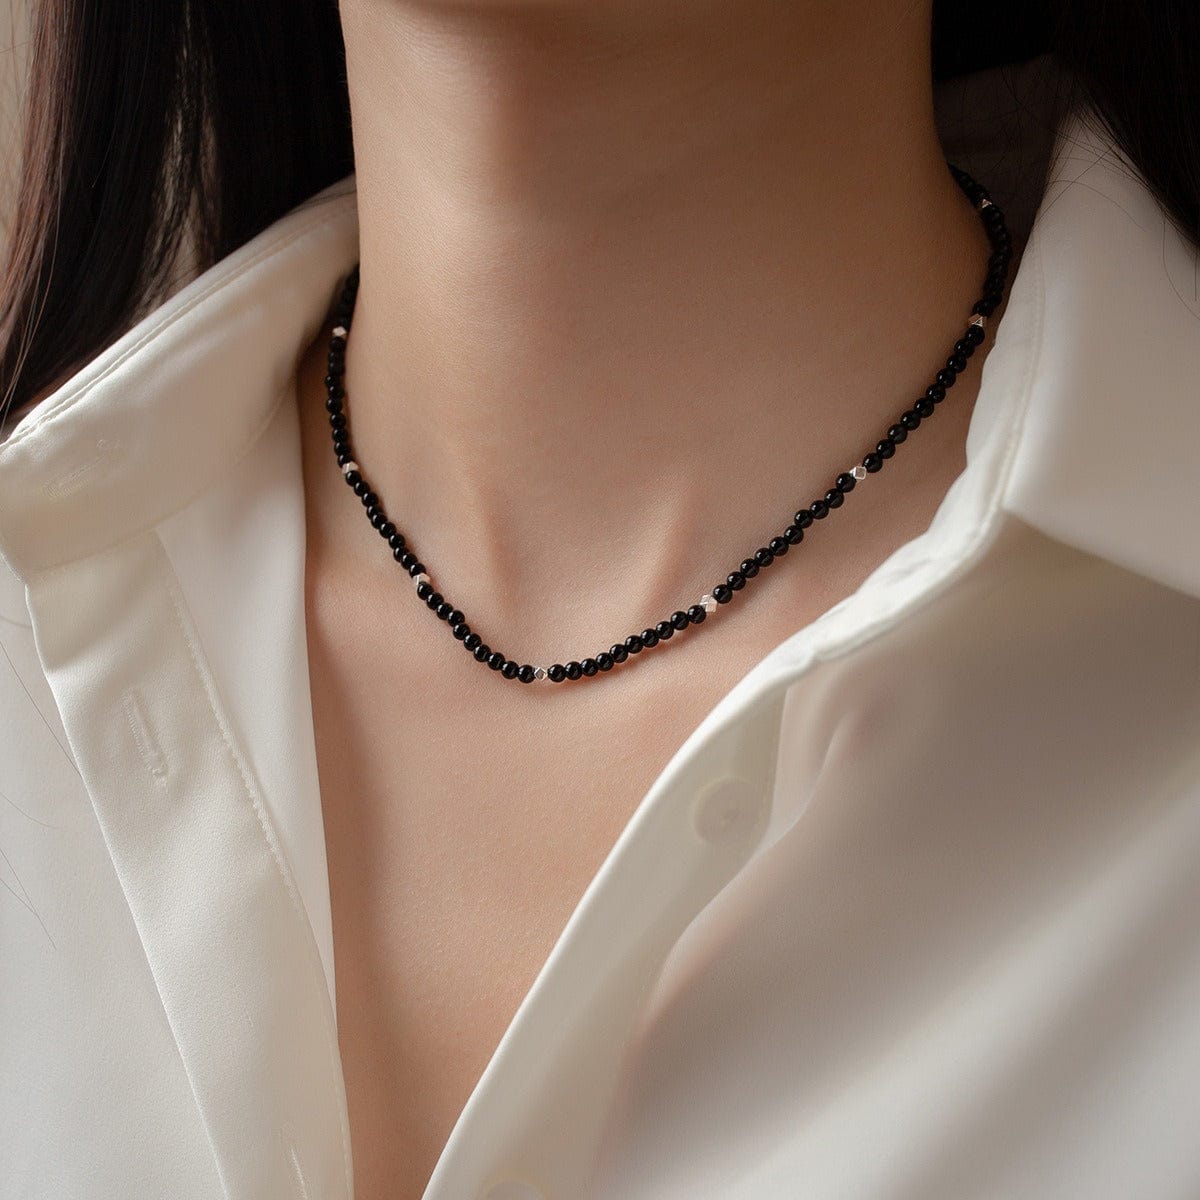 Collar - Collar de ágata negra de plata esterlina S925 para mujer